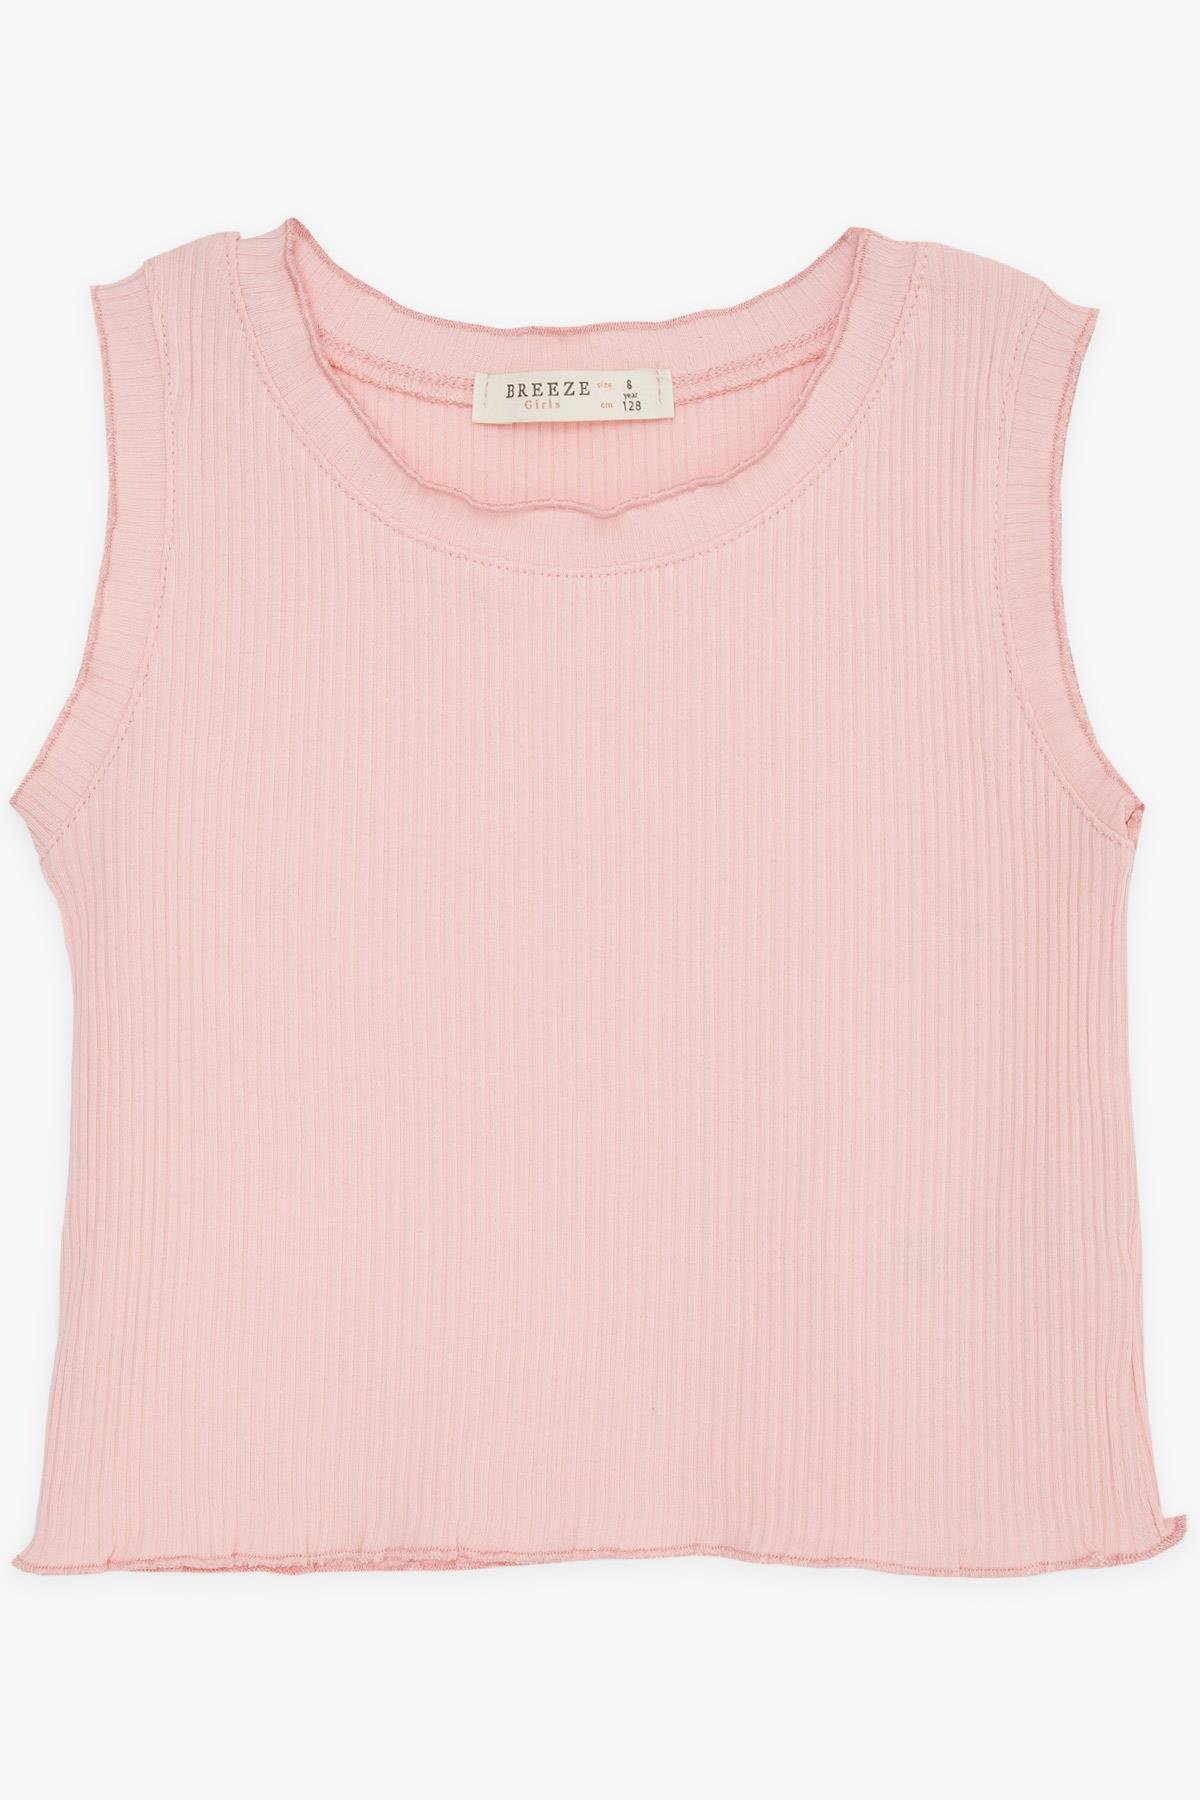 Kız Çocuk Crop Tişört Fitilli Somon 8-14 Yaş - Hesaplı Fiyatlarla | Breeze